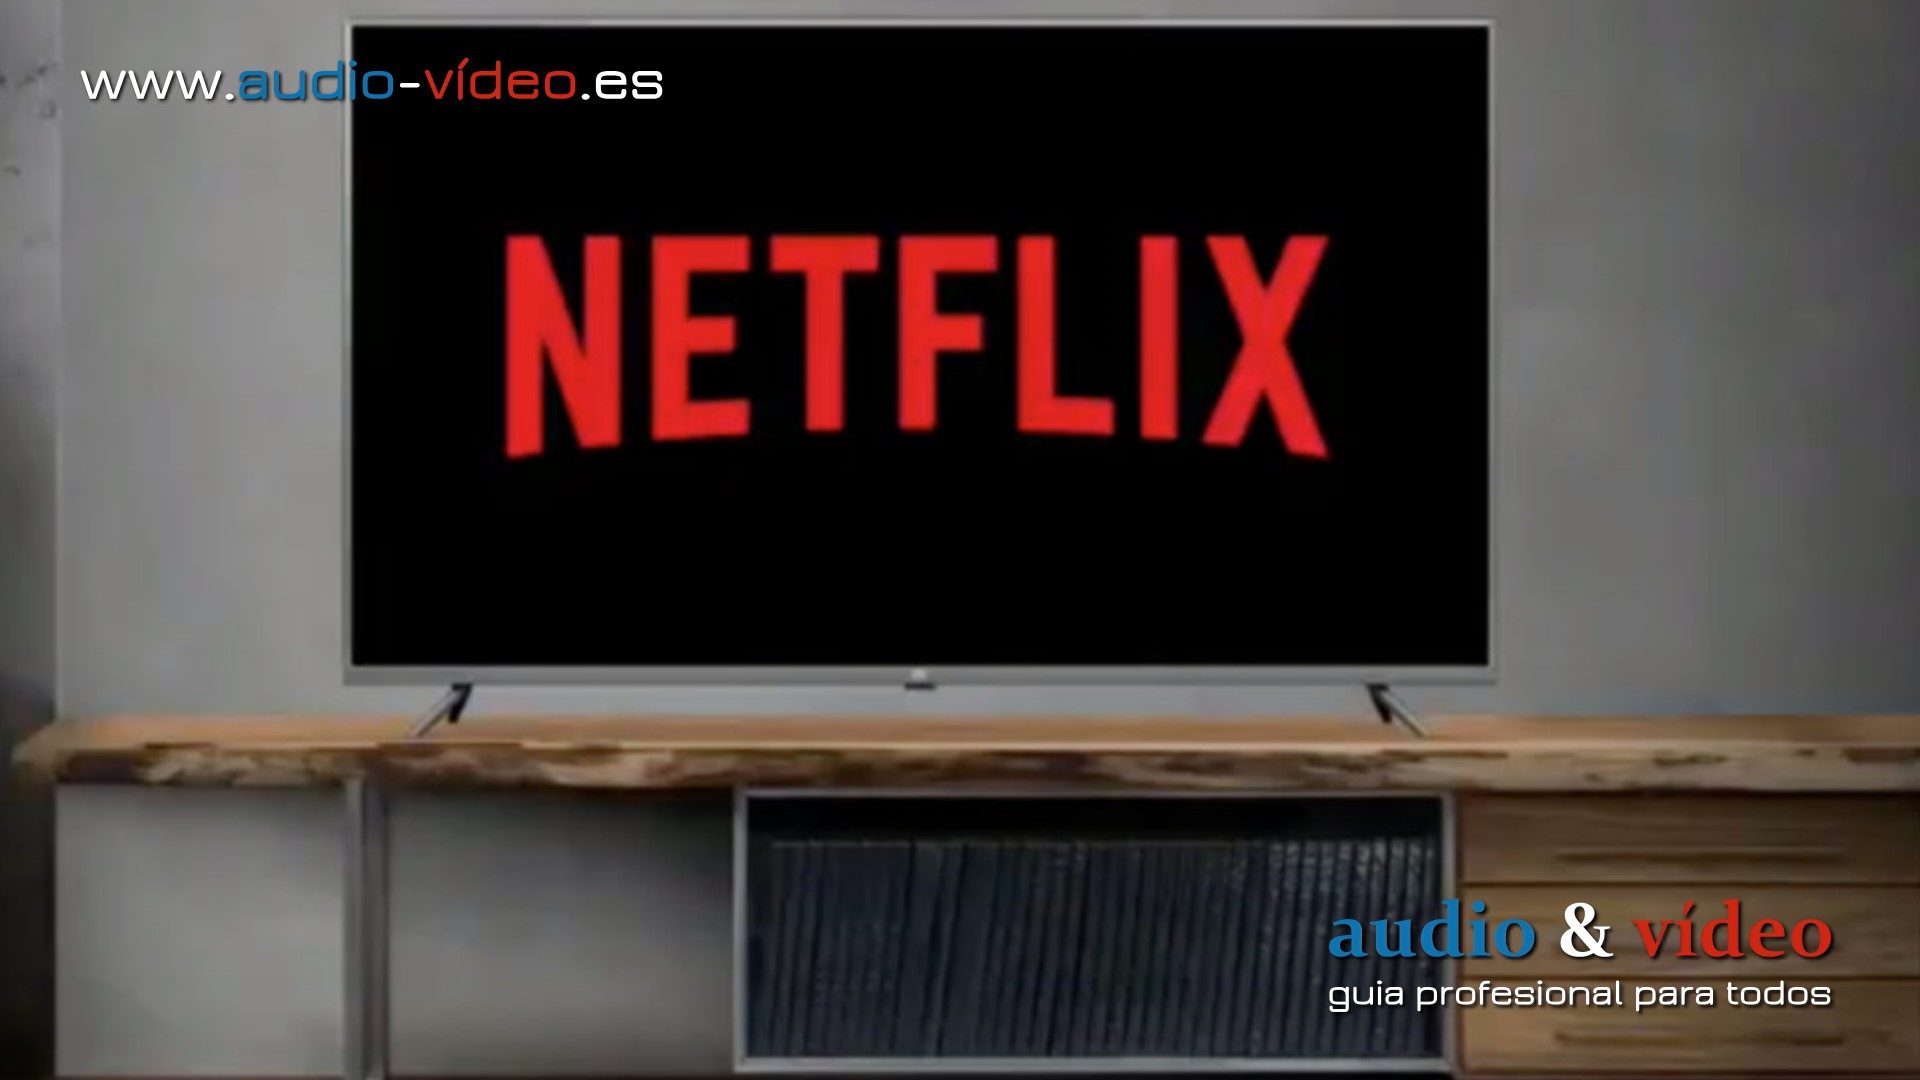 Netflix cambia los criterios de certificación de los televisores. A partir de ahora, deben apoyar el contenido interactivo